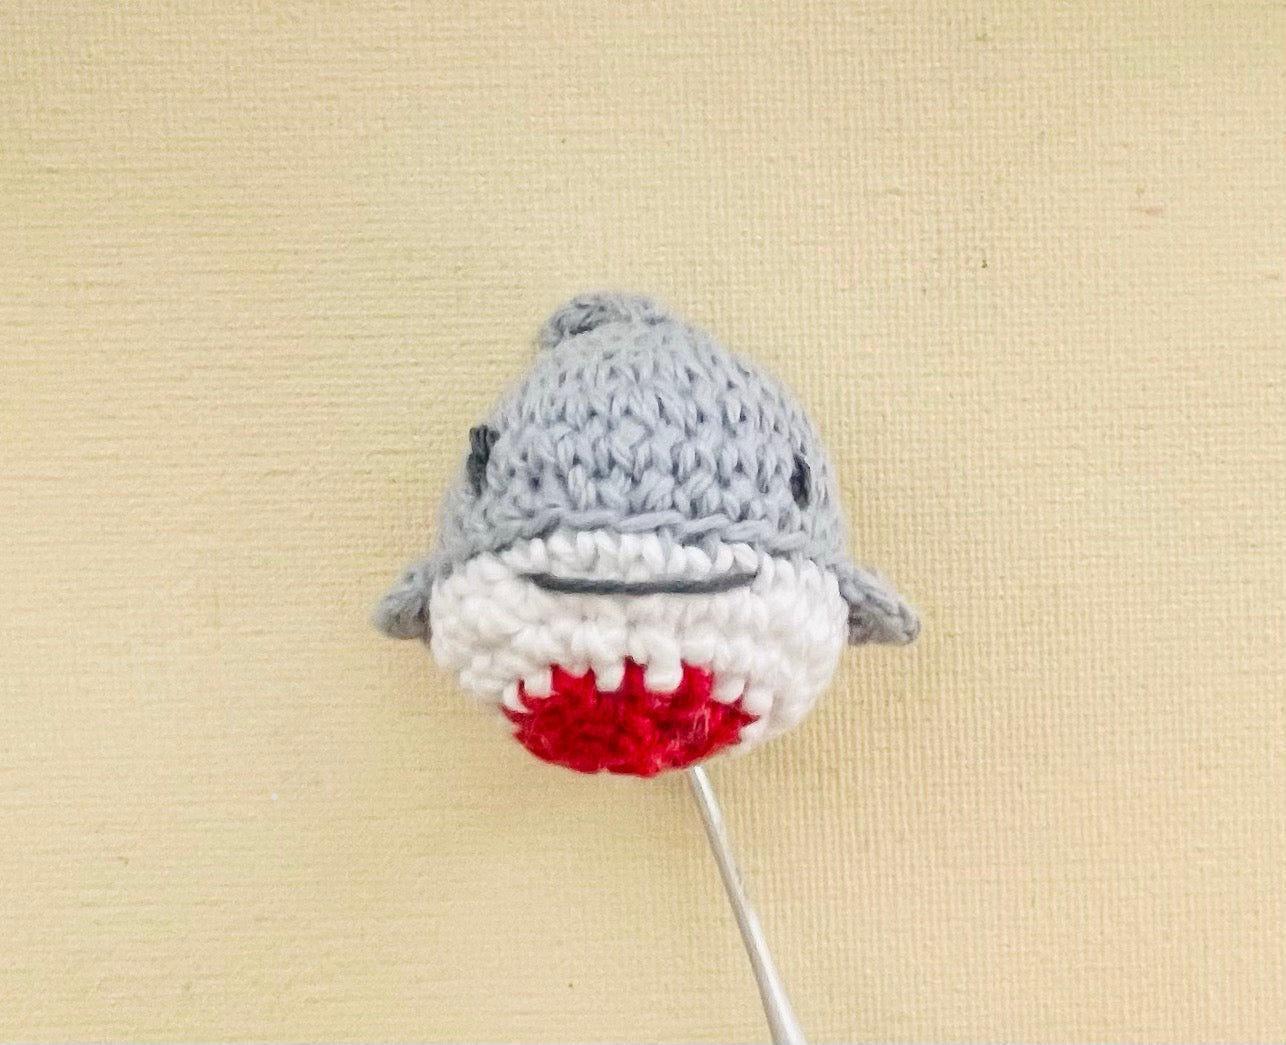 Modèle de Crochet Jeu de Requins avec Mini Requins